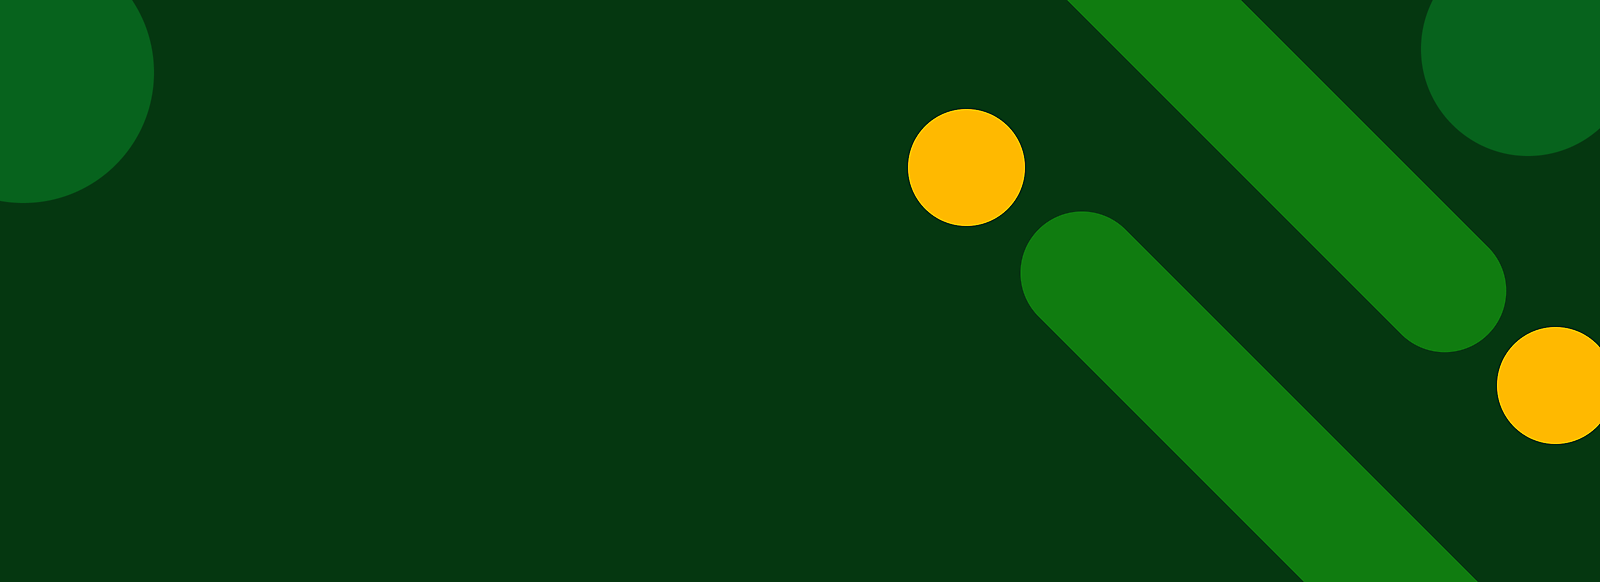 Abstrakt grønn bakgrunn med gule prikker og diagonale grønne striper.